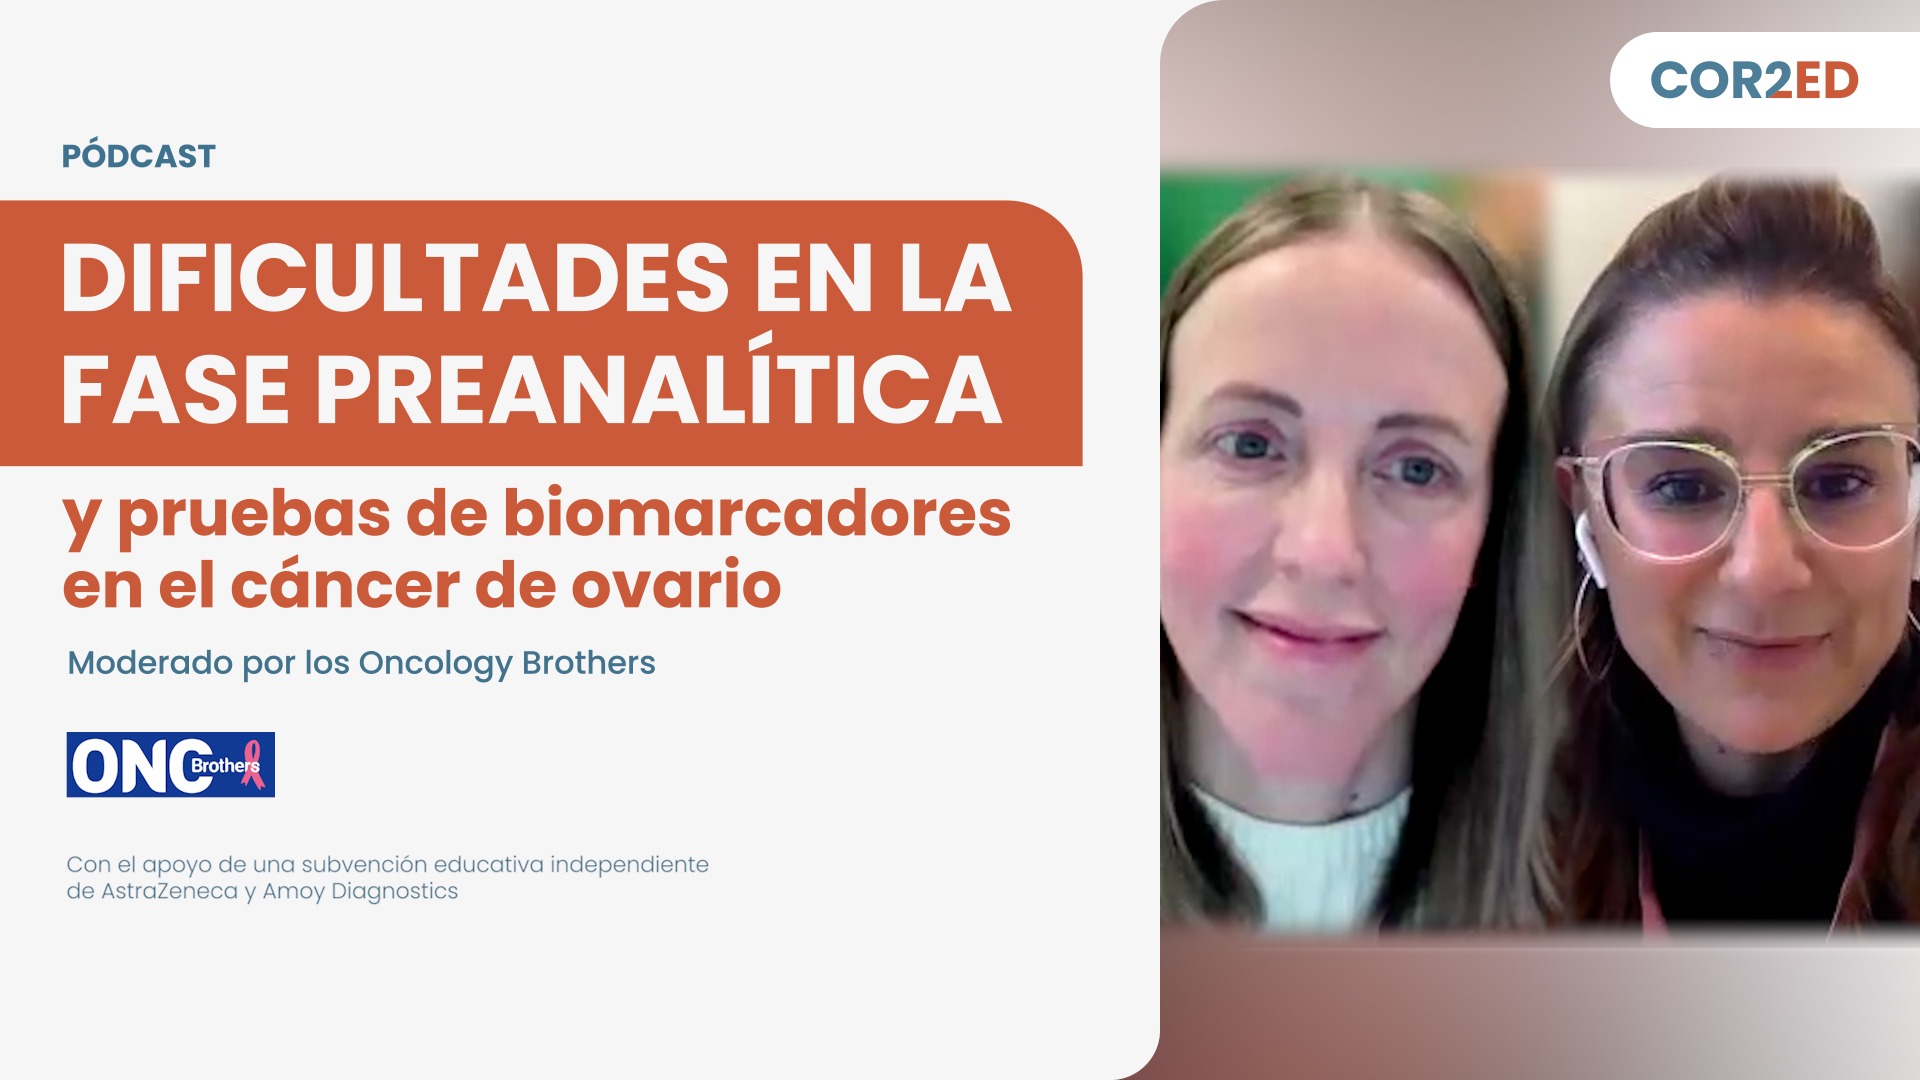 Cáncer de ovario: Dificultades en la fase preanalítica y pruebas de biomarcadores (Spanish)